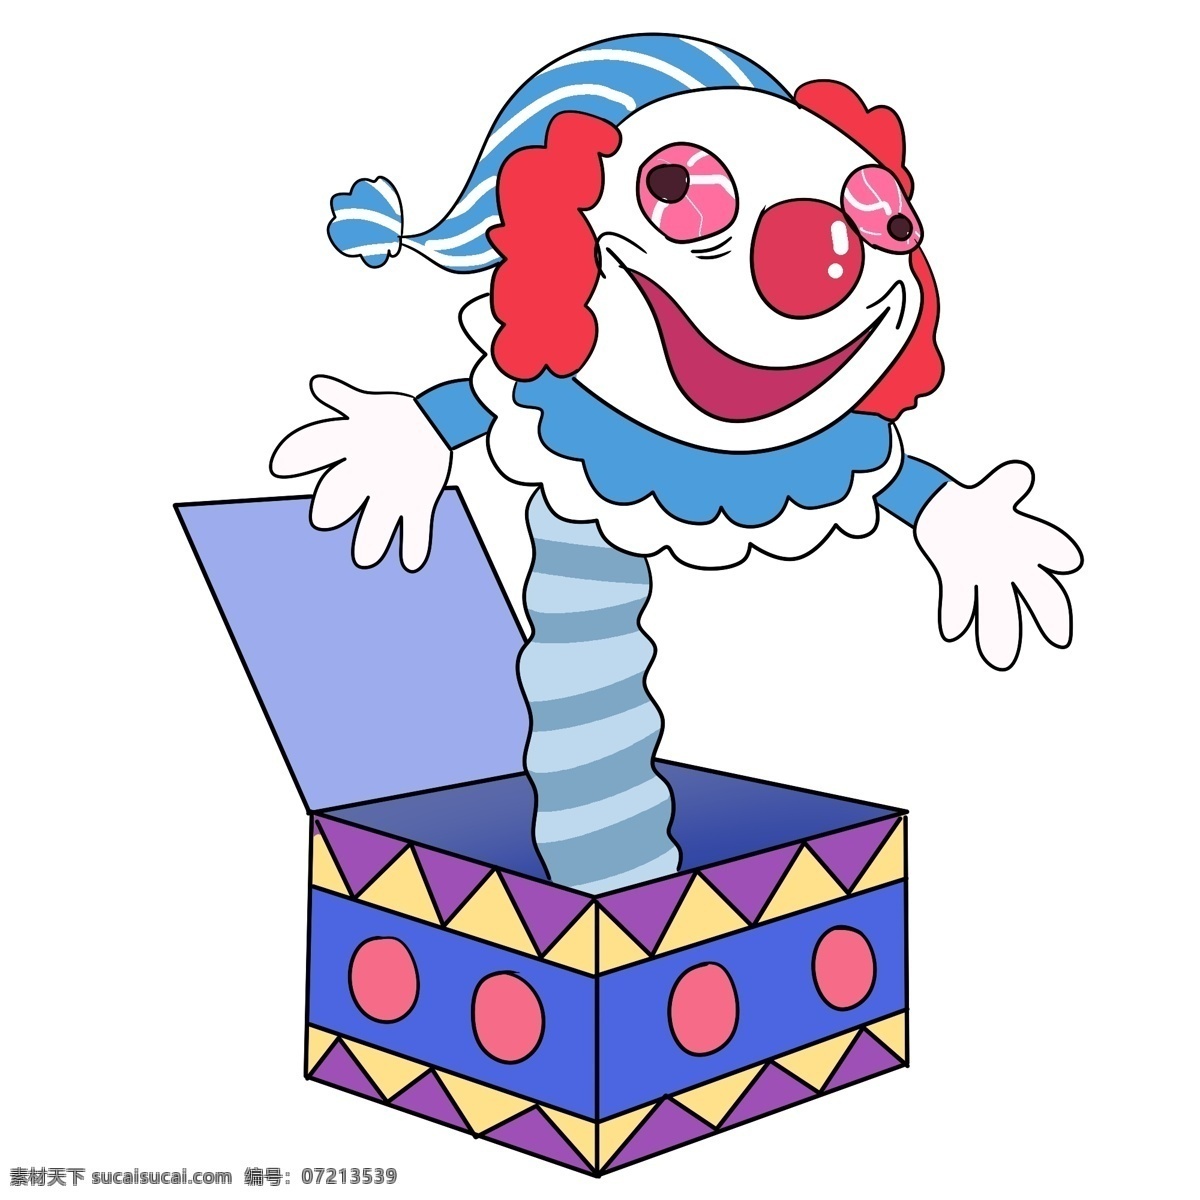 愚人节 惊吓 小丑 插画 愚人节快乐 愚人节惊吓 惊吓小丑插画 快乐4月1日 小丑礼盒 惊吓盒 彩色盒子